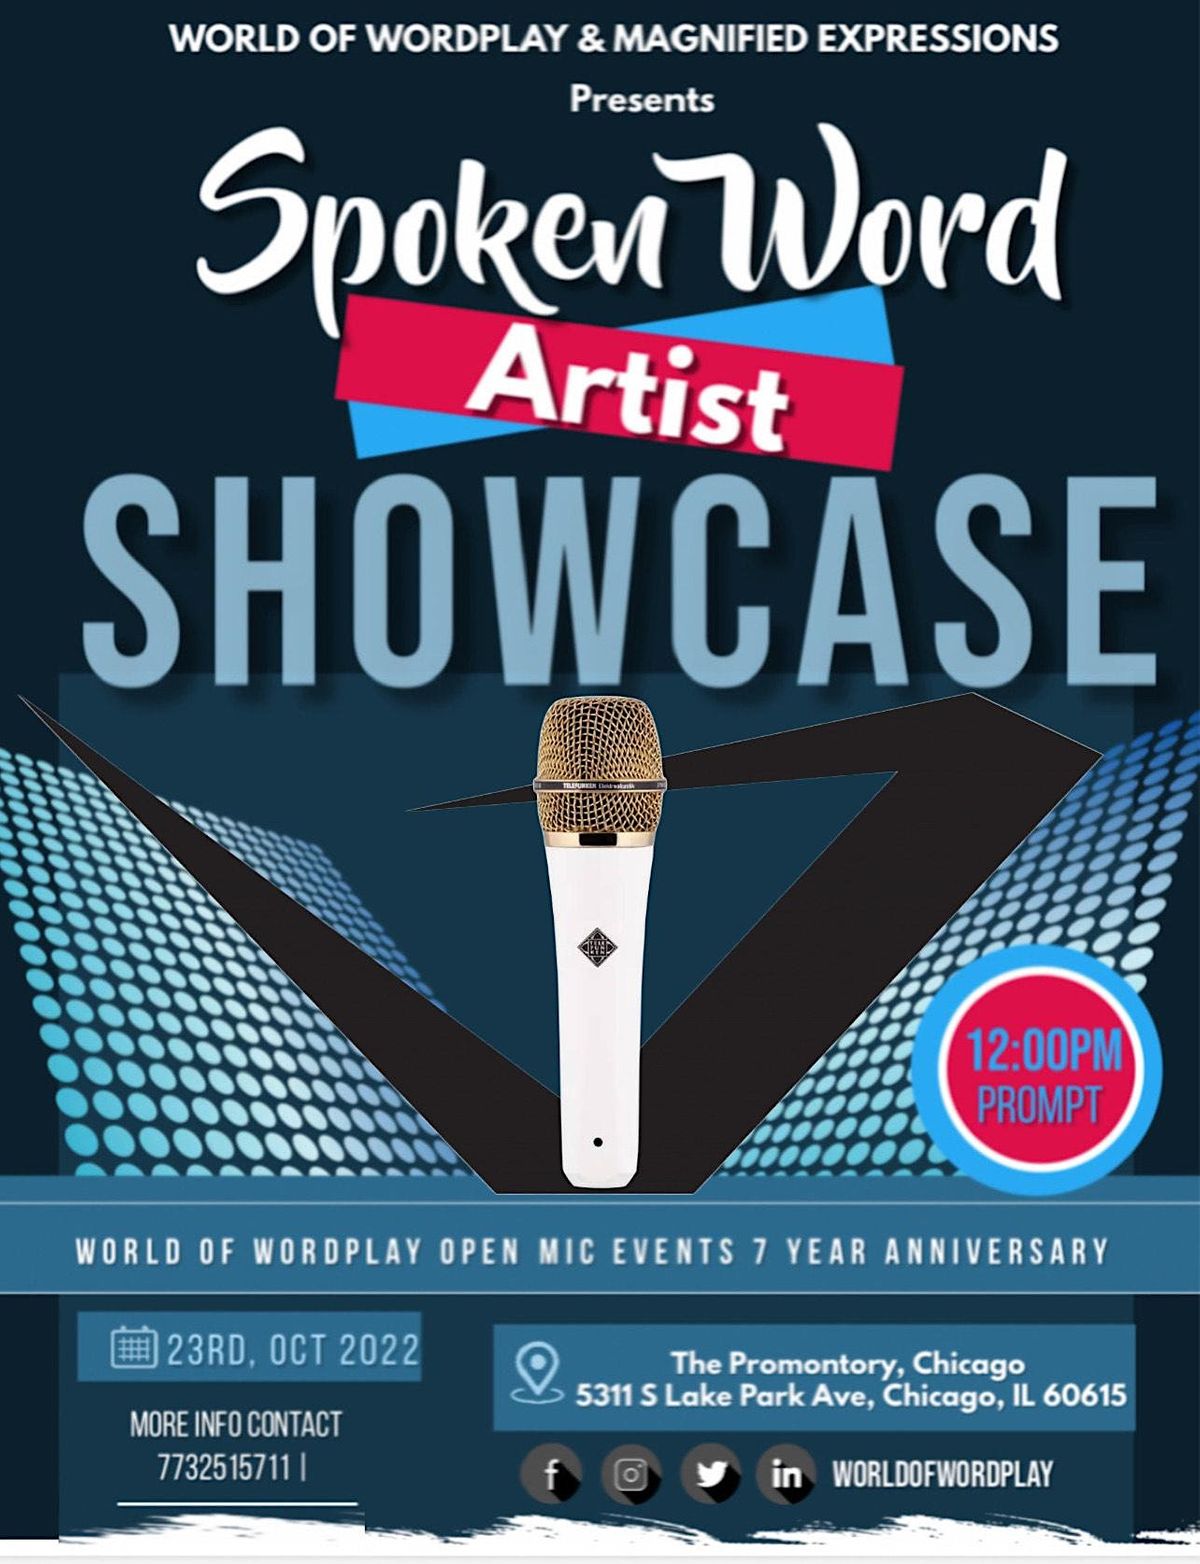 Spoken Word Affair & W.O.W 7 Year Anniversary